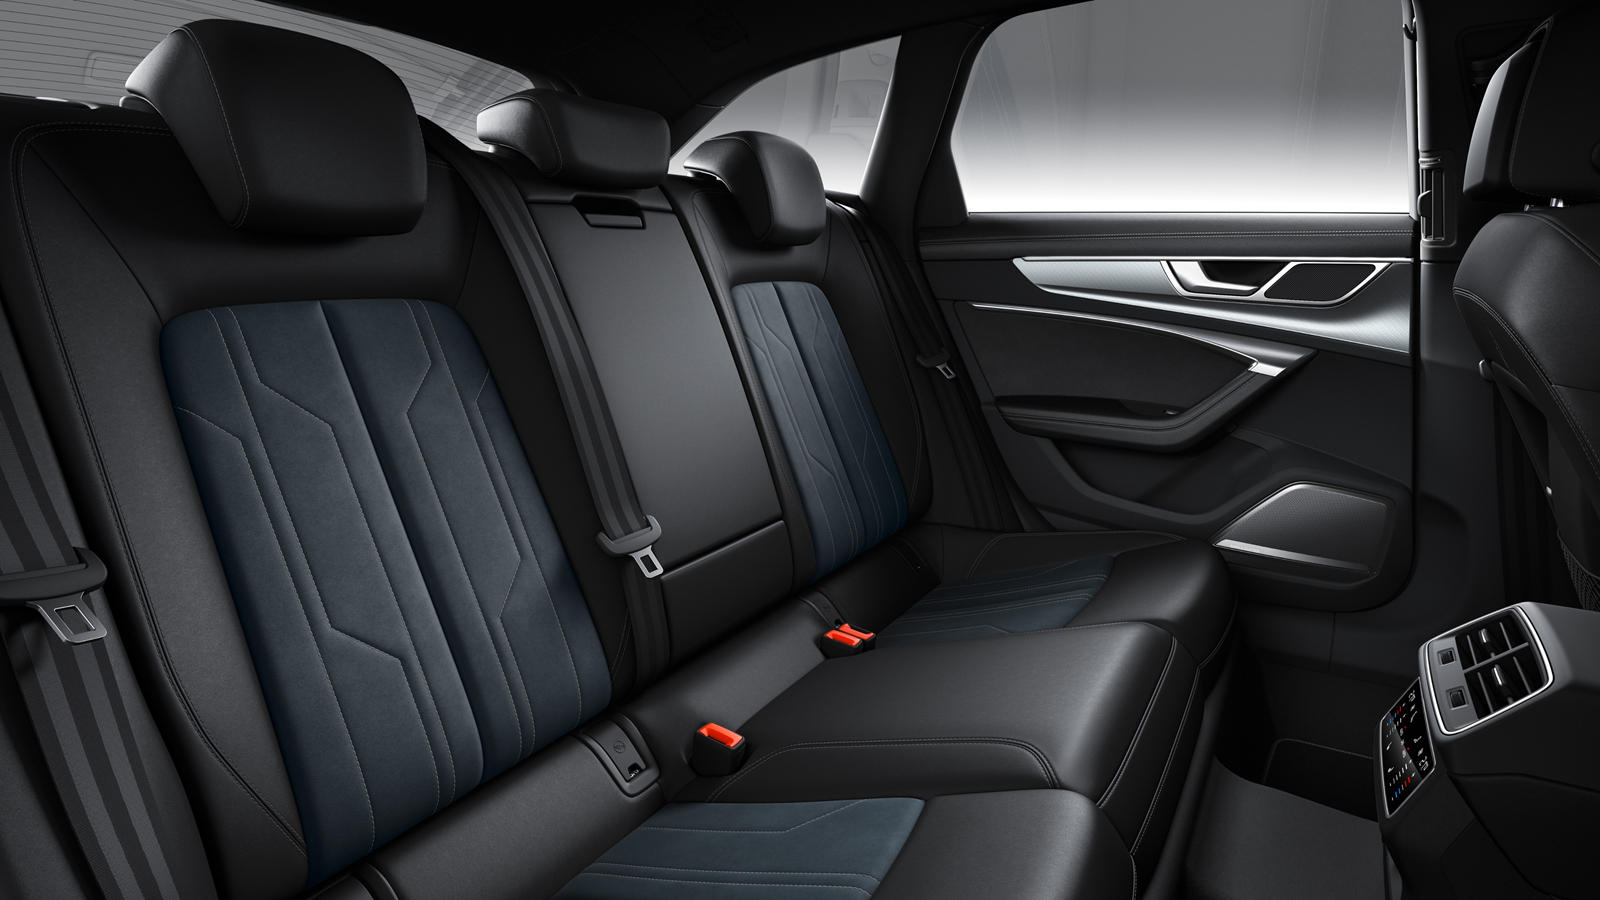 Audi A6 Allroad interior - Seats